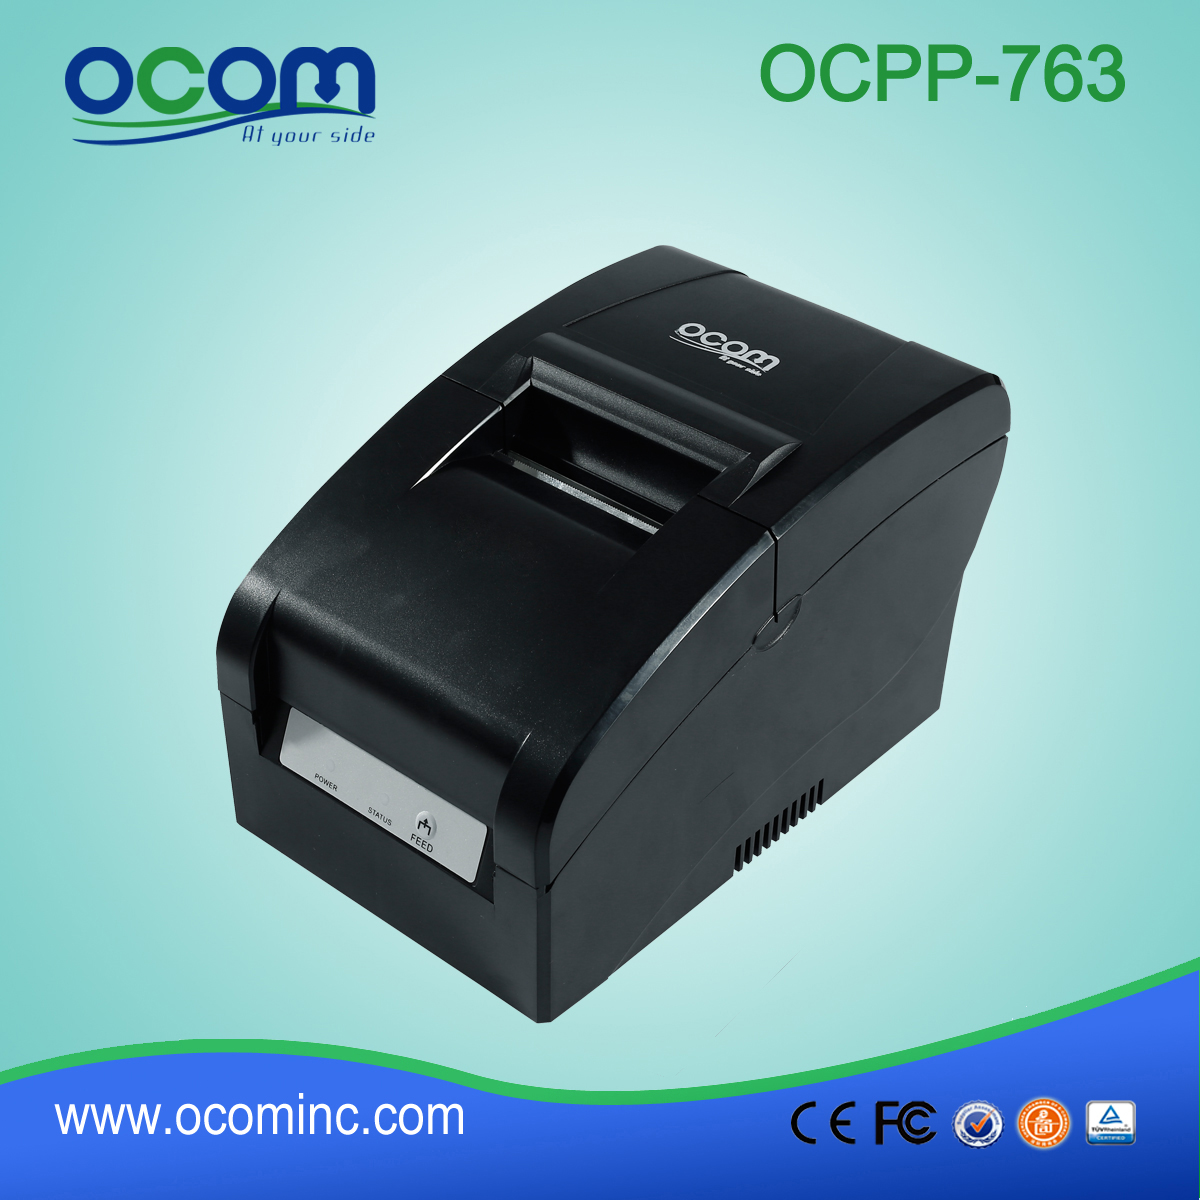 OCPP-763 Mini-kropkowa drukarka igłowa o szerokości 76 mm. Rozmiar papieru do kasy